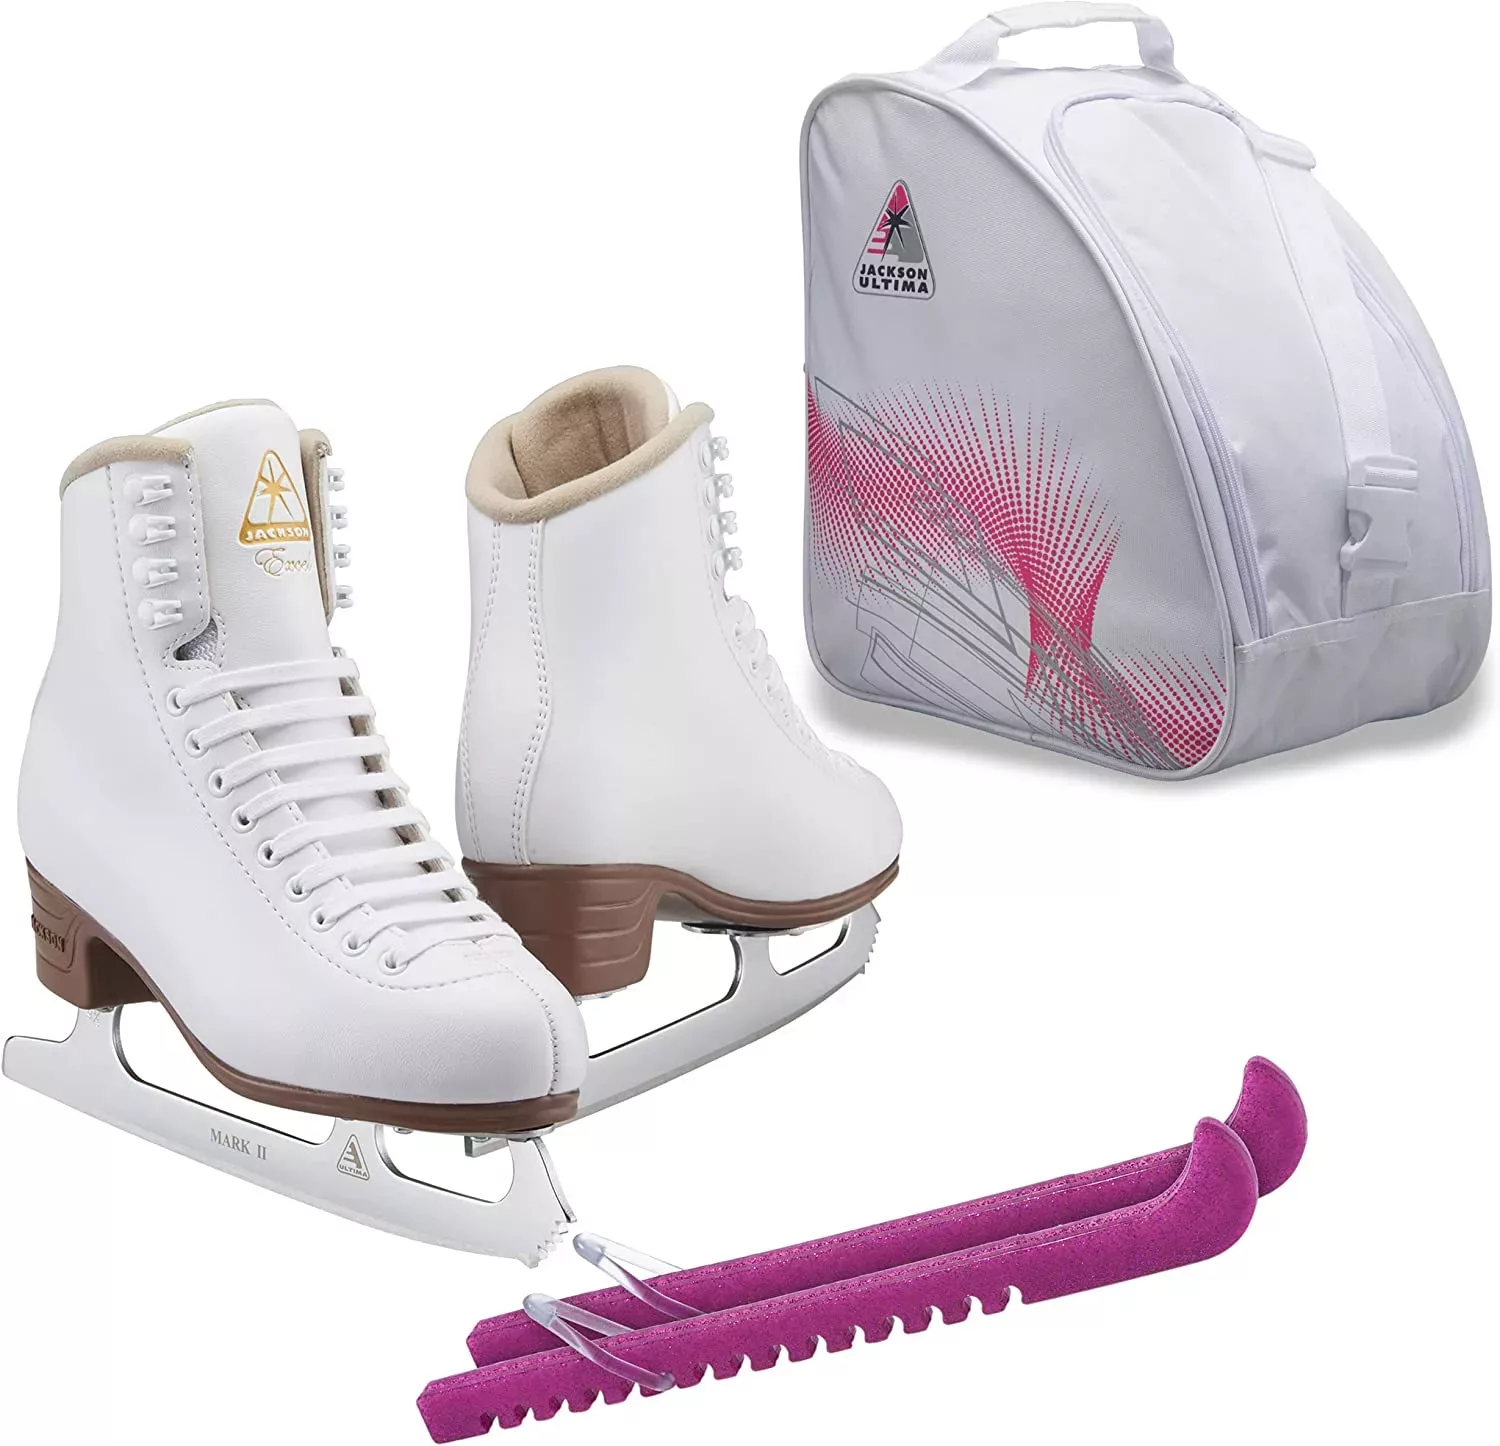 SKATE GURU Jackson Ultima Eiskunstlaufschlittschuhe EXCEL JS1290 Bundle mit Tasche und Guardog Skate Guards Bündel